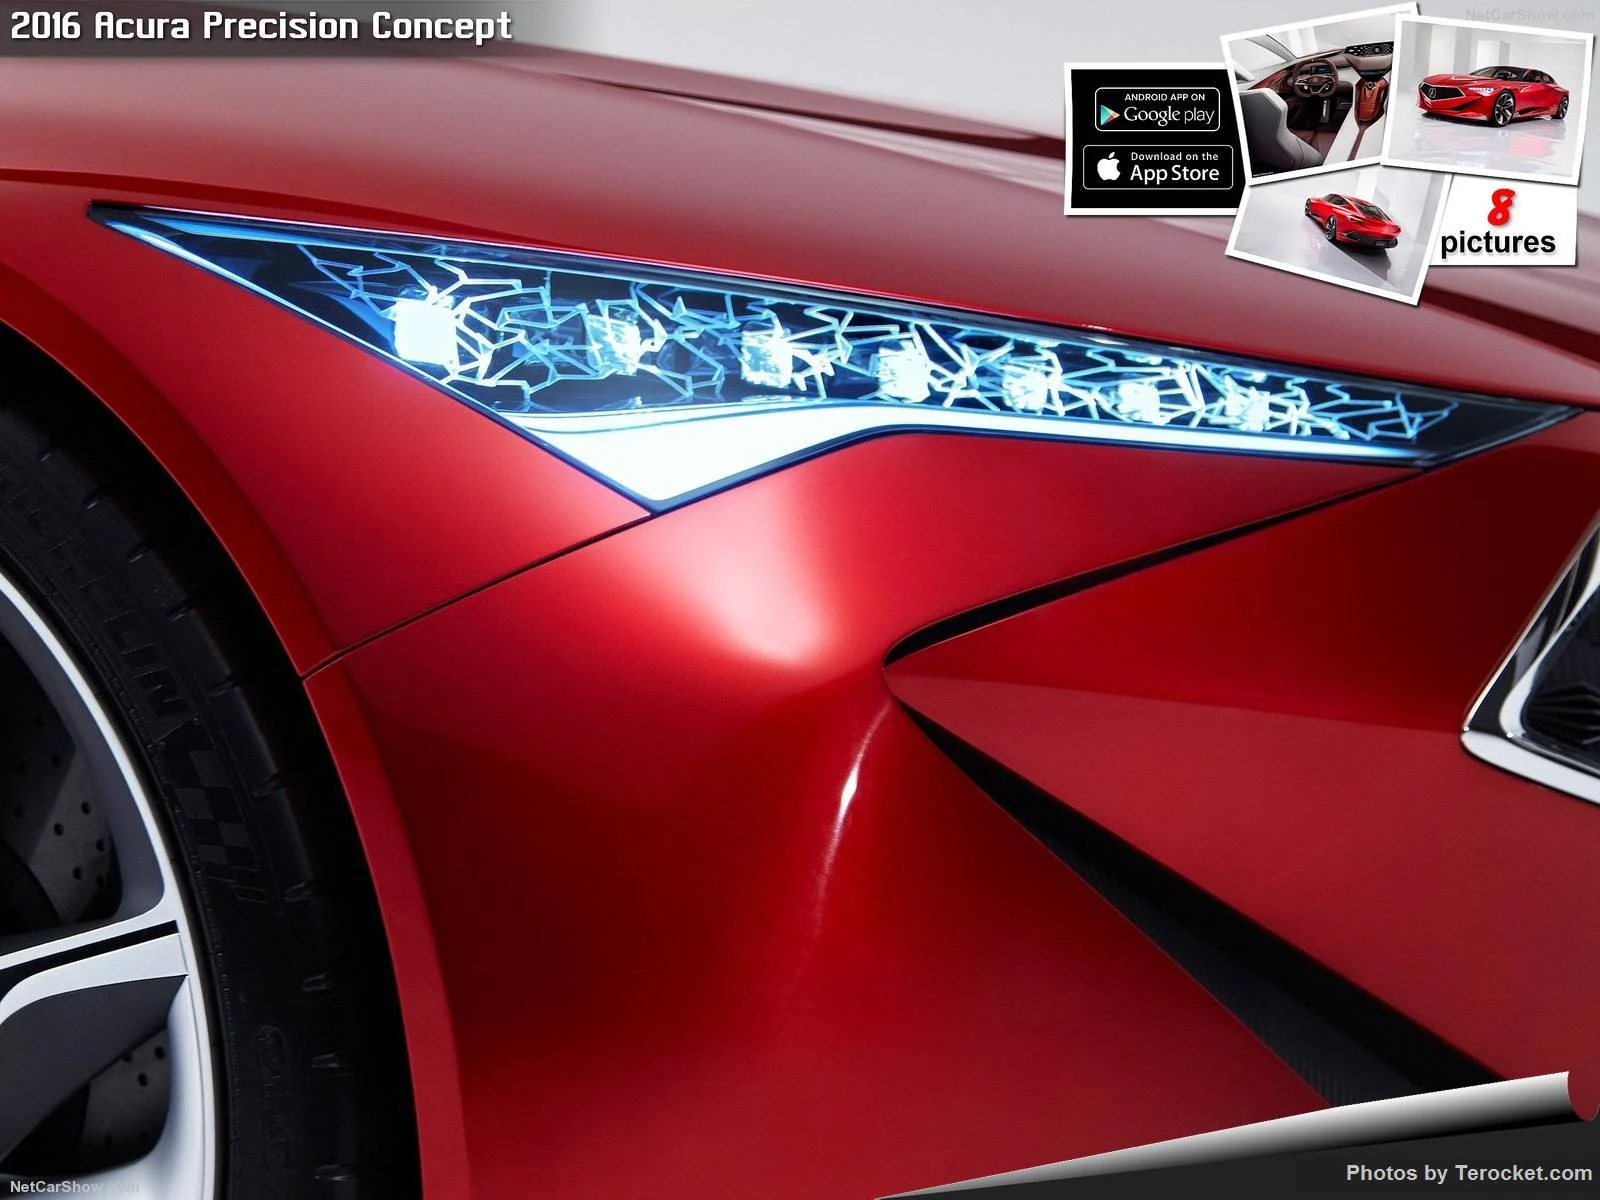 Hình ảnh xe ô tô Acura Precision Concept 2016 & nội ngoại thất